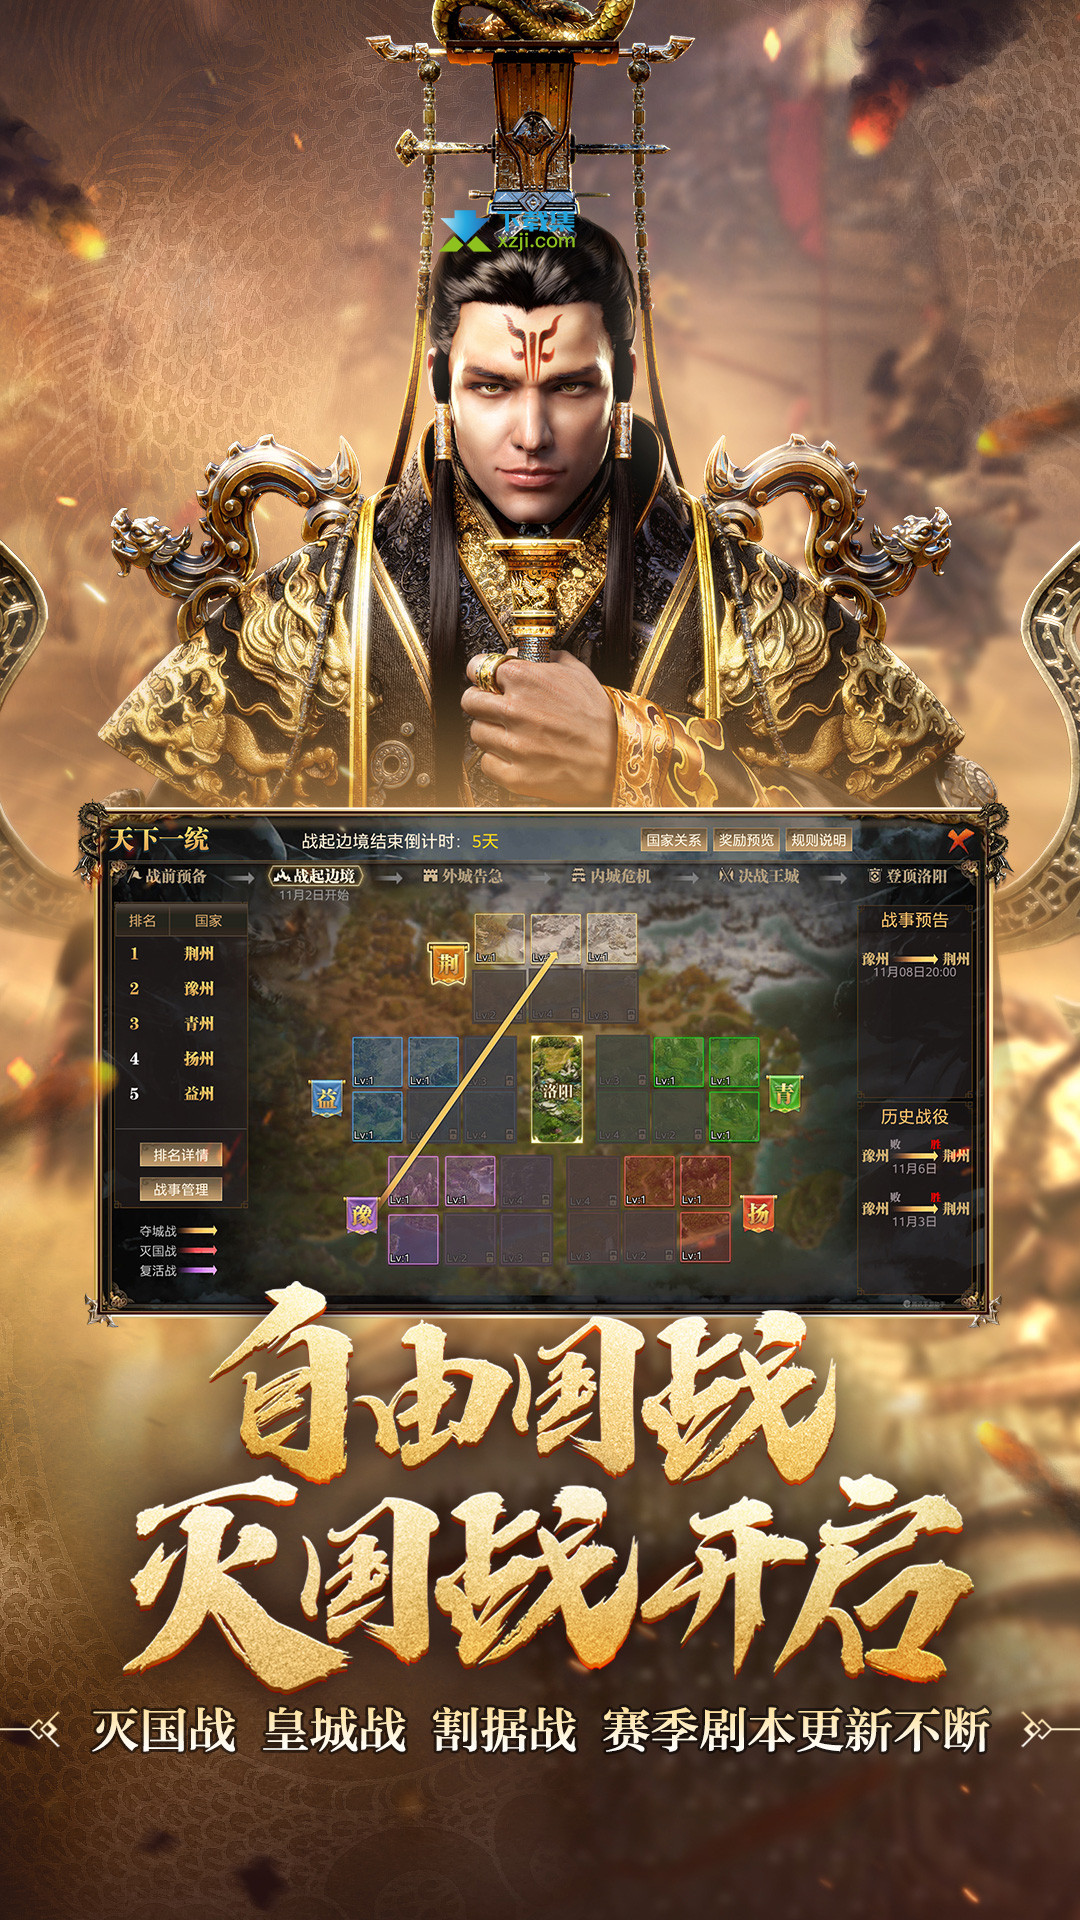 御龙在天2015年7月新版本最新壁纸_御龙在天专区_17173.com中国游戏第一门户站